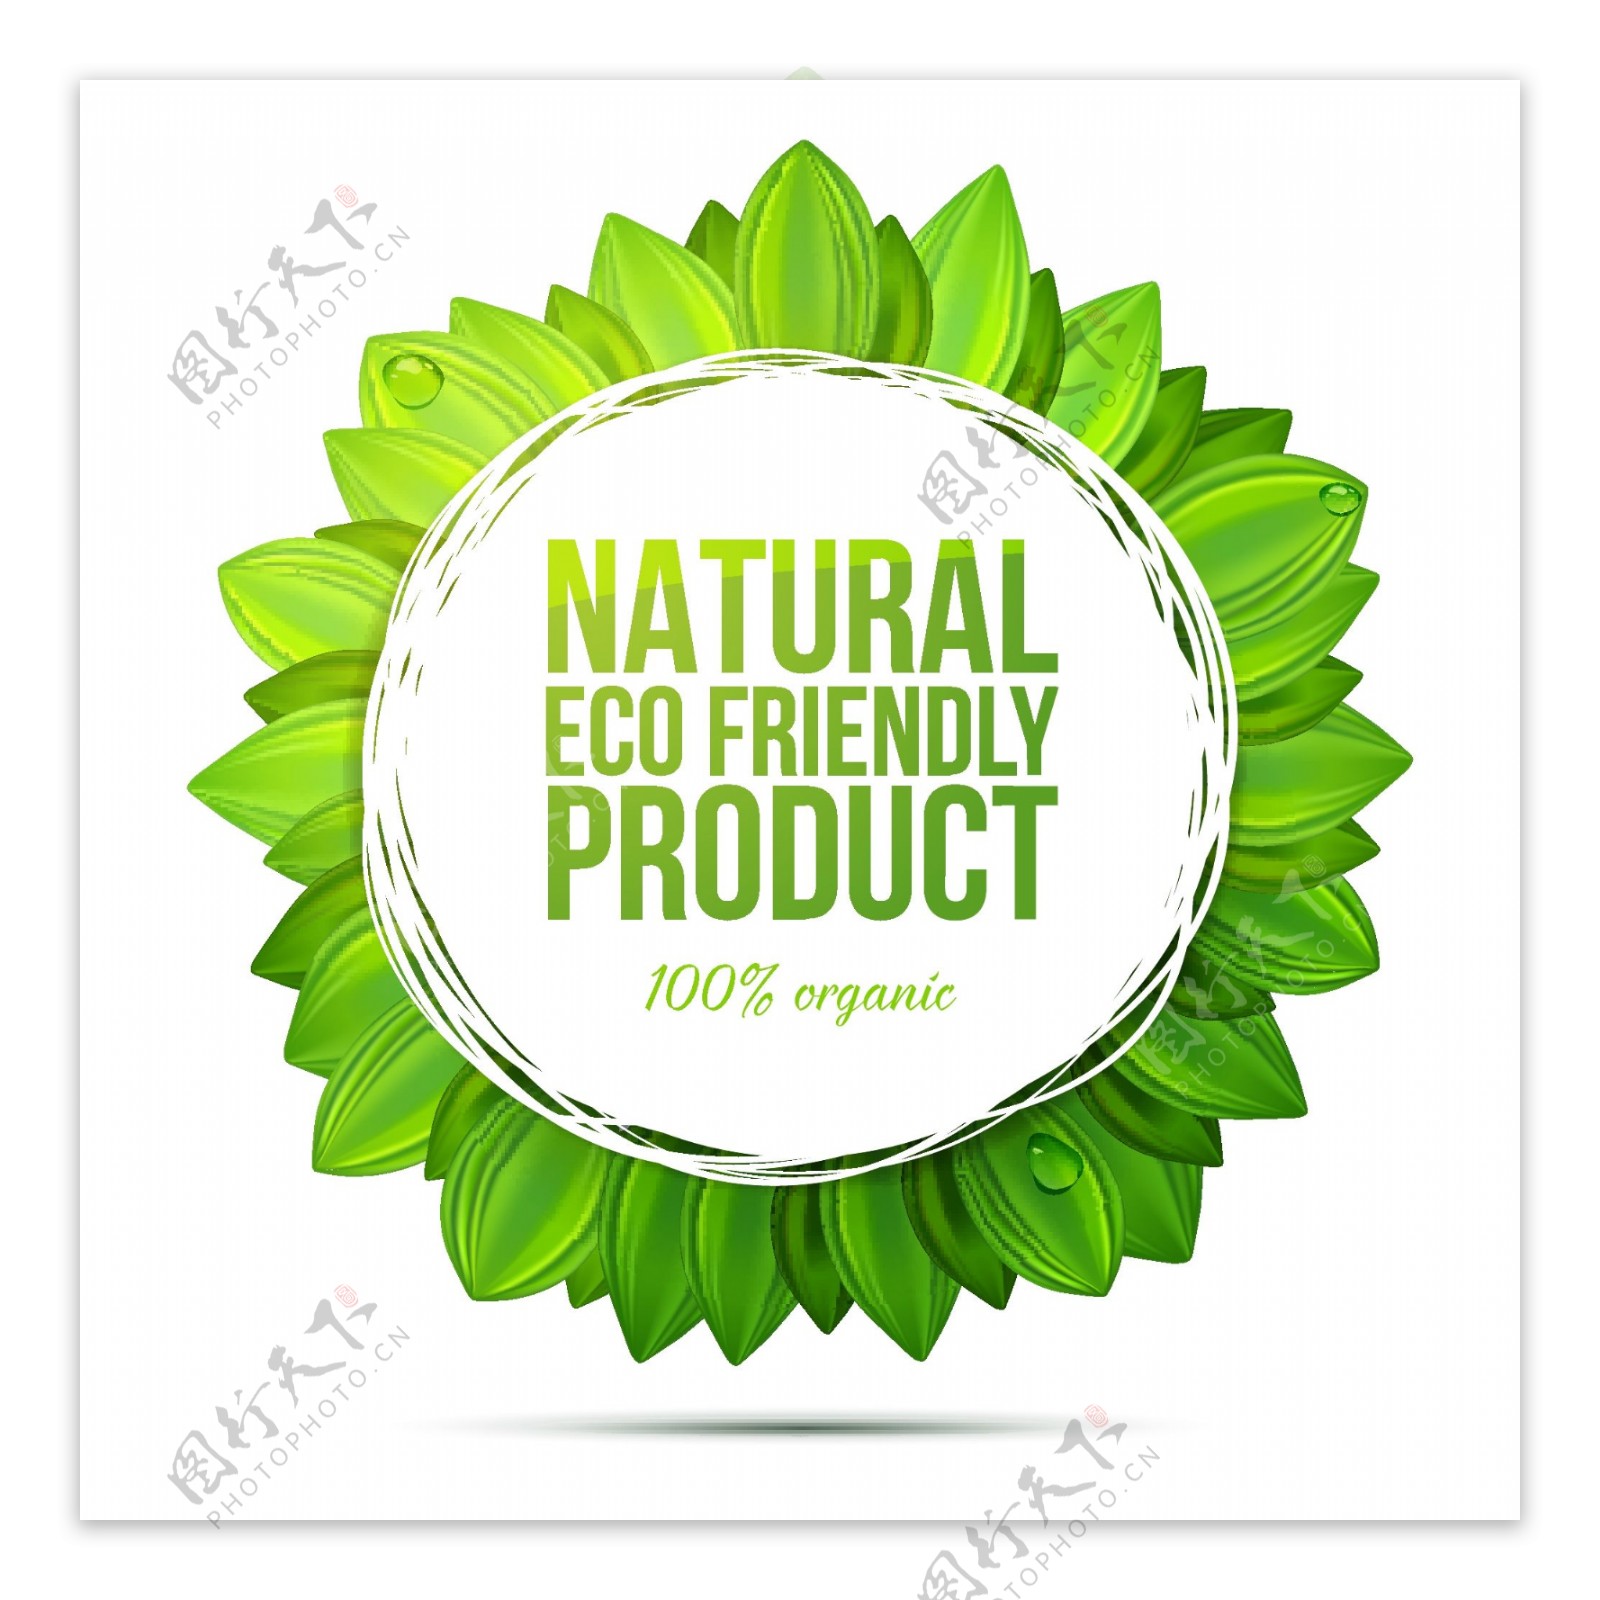 天然环保产品标签